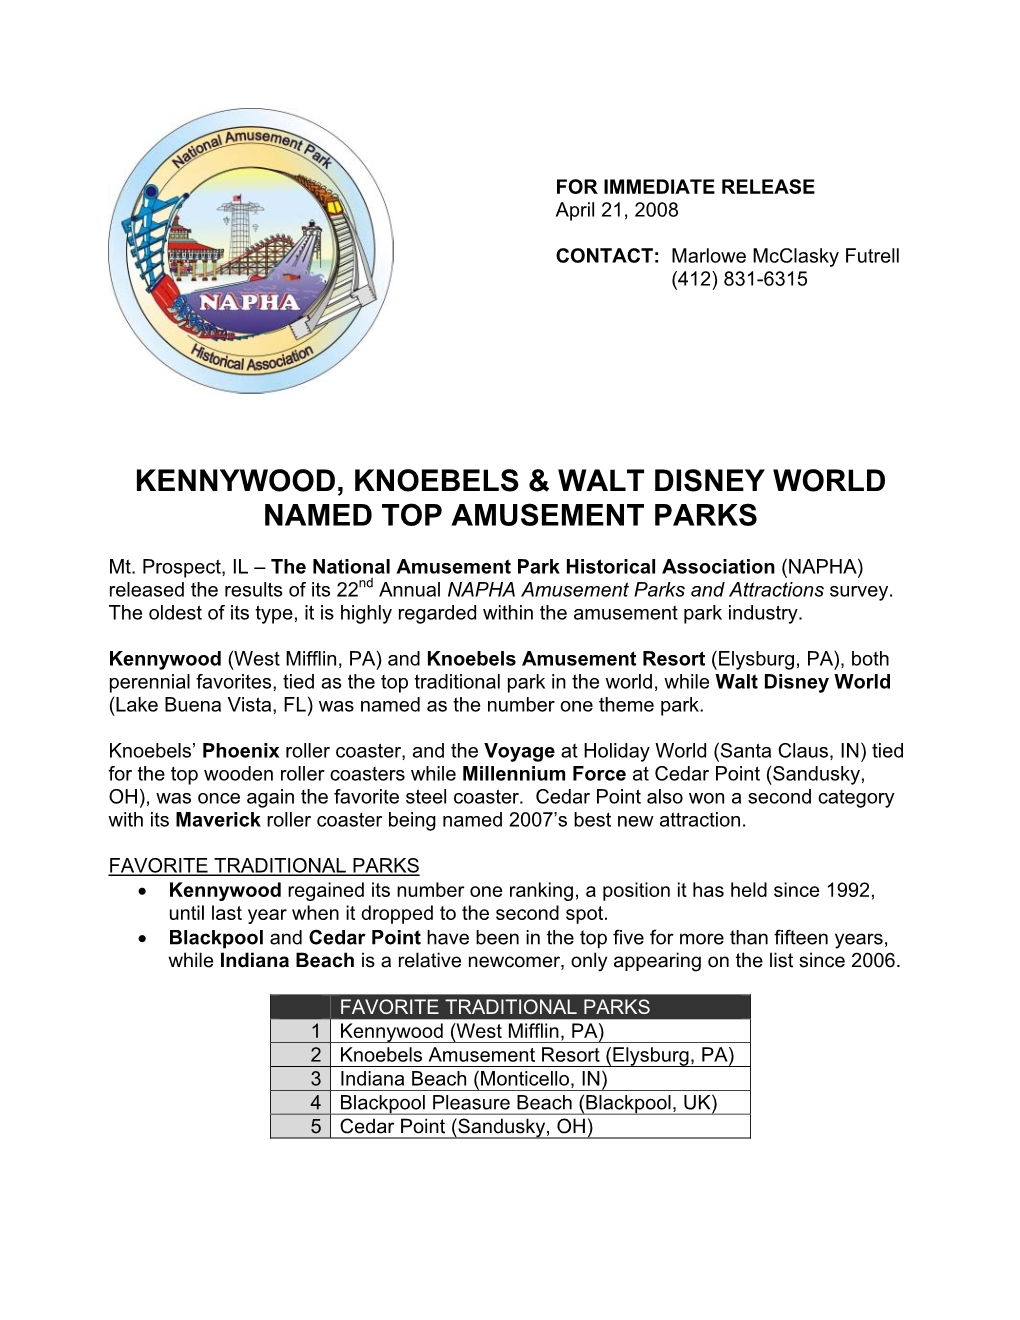 Kennywood, Knoebels & Walt Disney World Named Top Amusement Parks